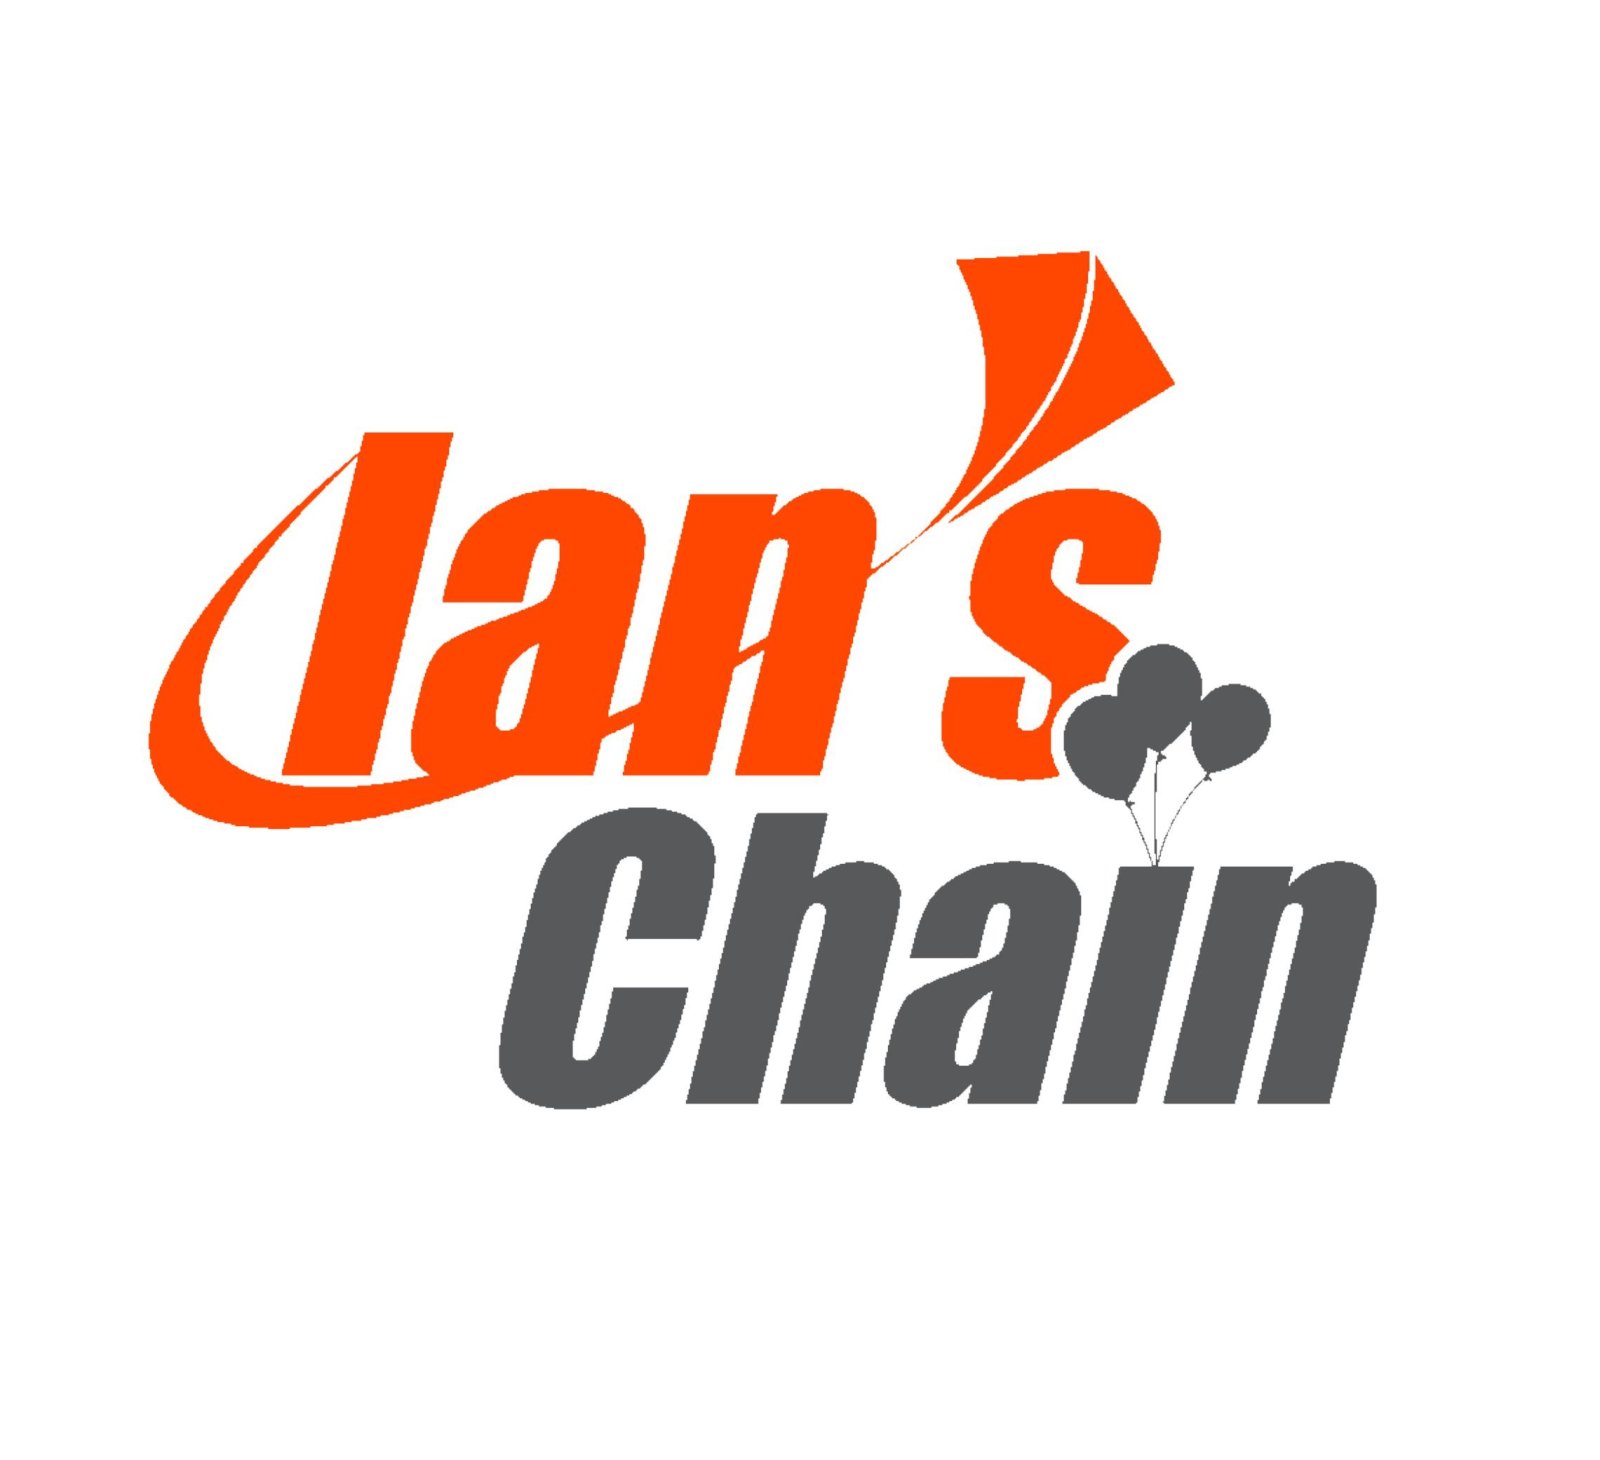 Ian's Chain